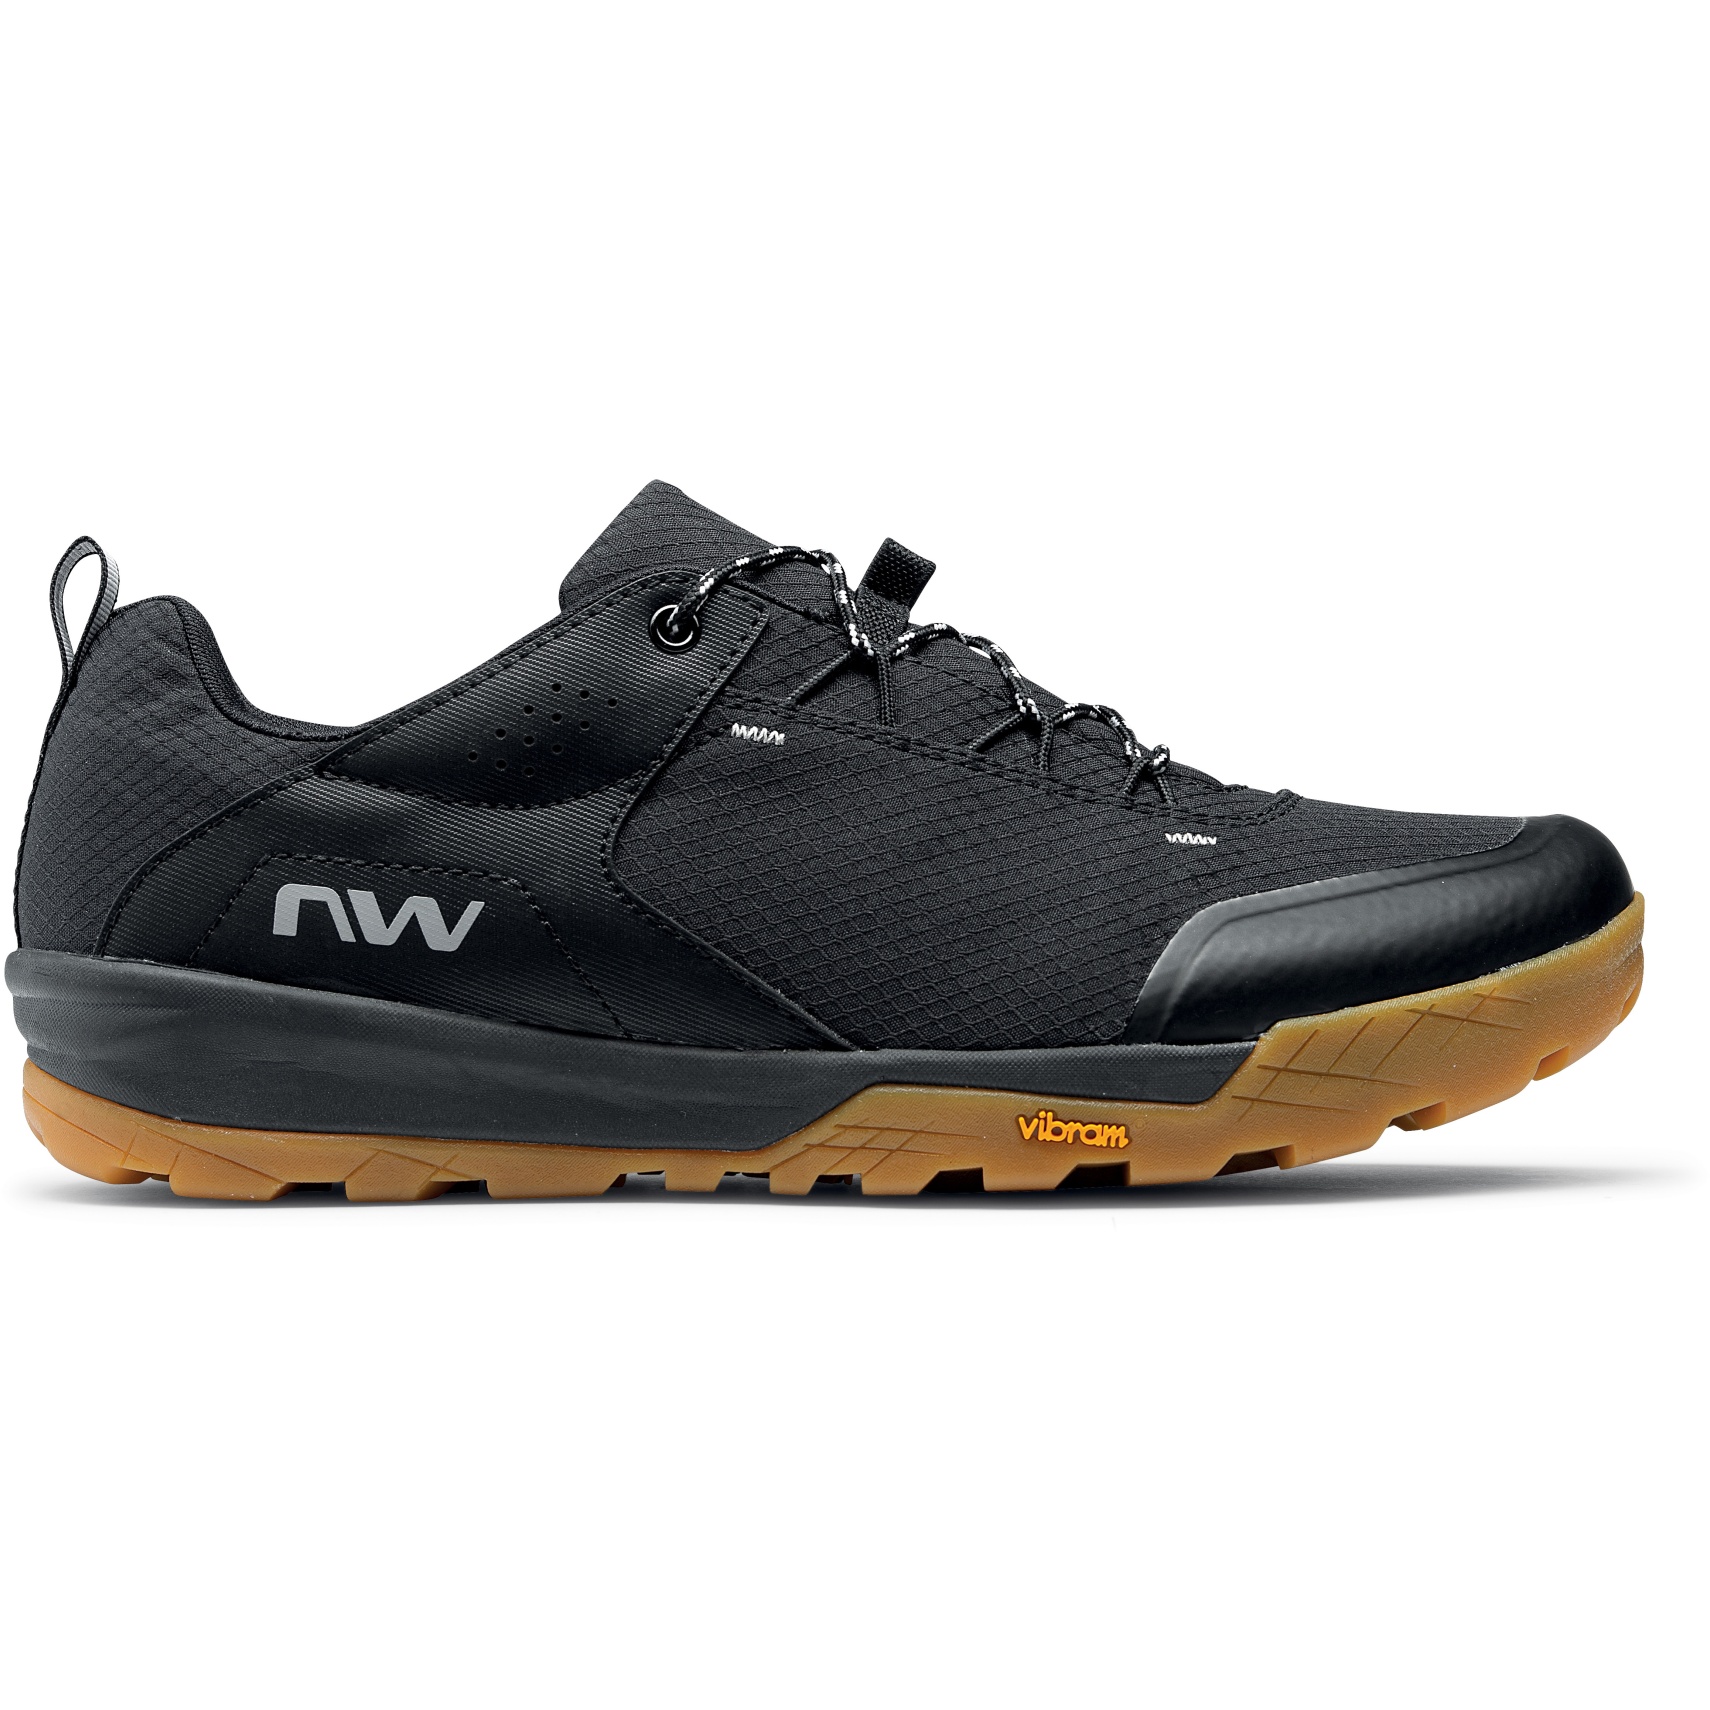 Produktbild von Northwave Rockit All Terain Schuhe - schwarz 10